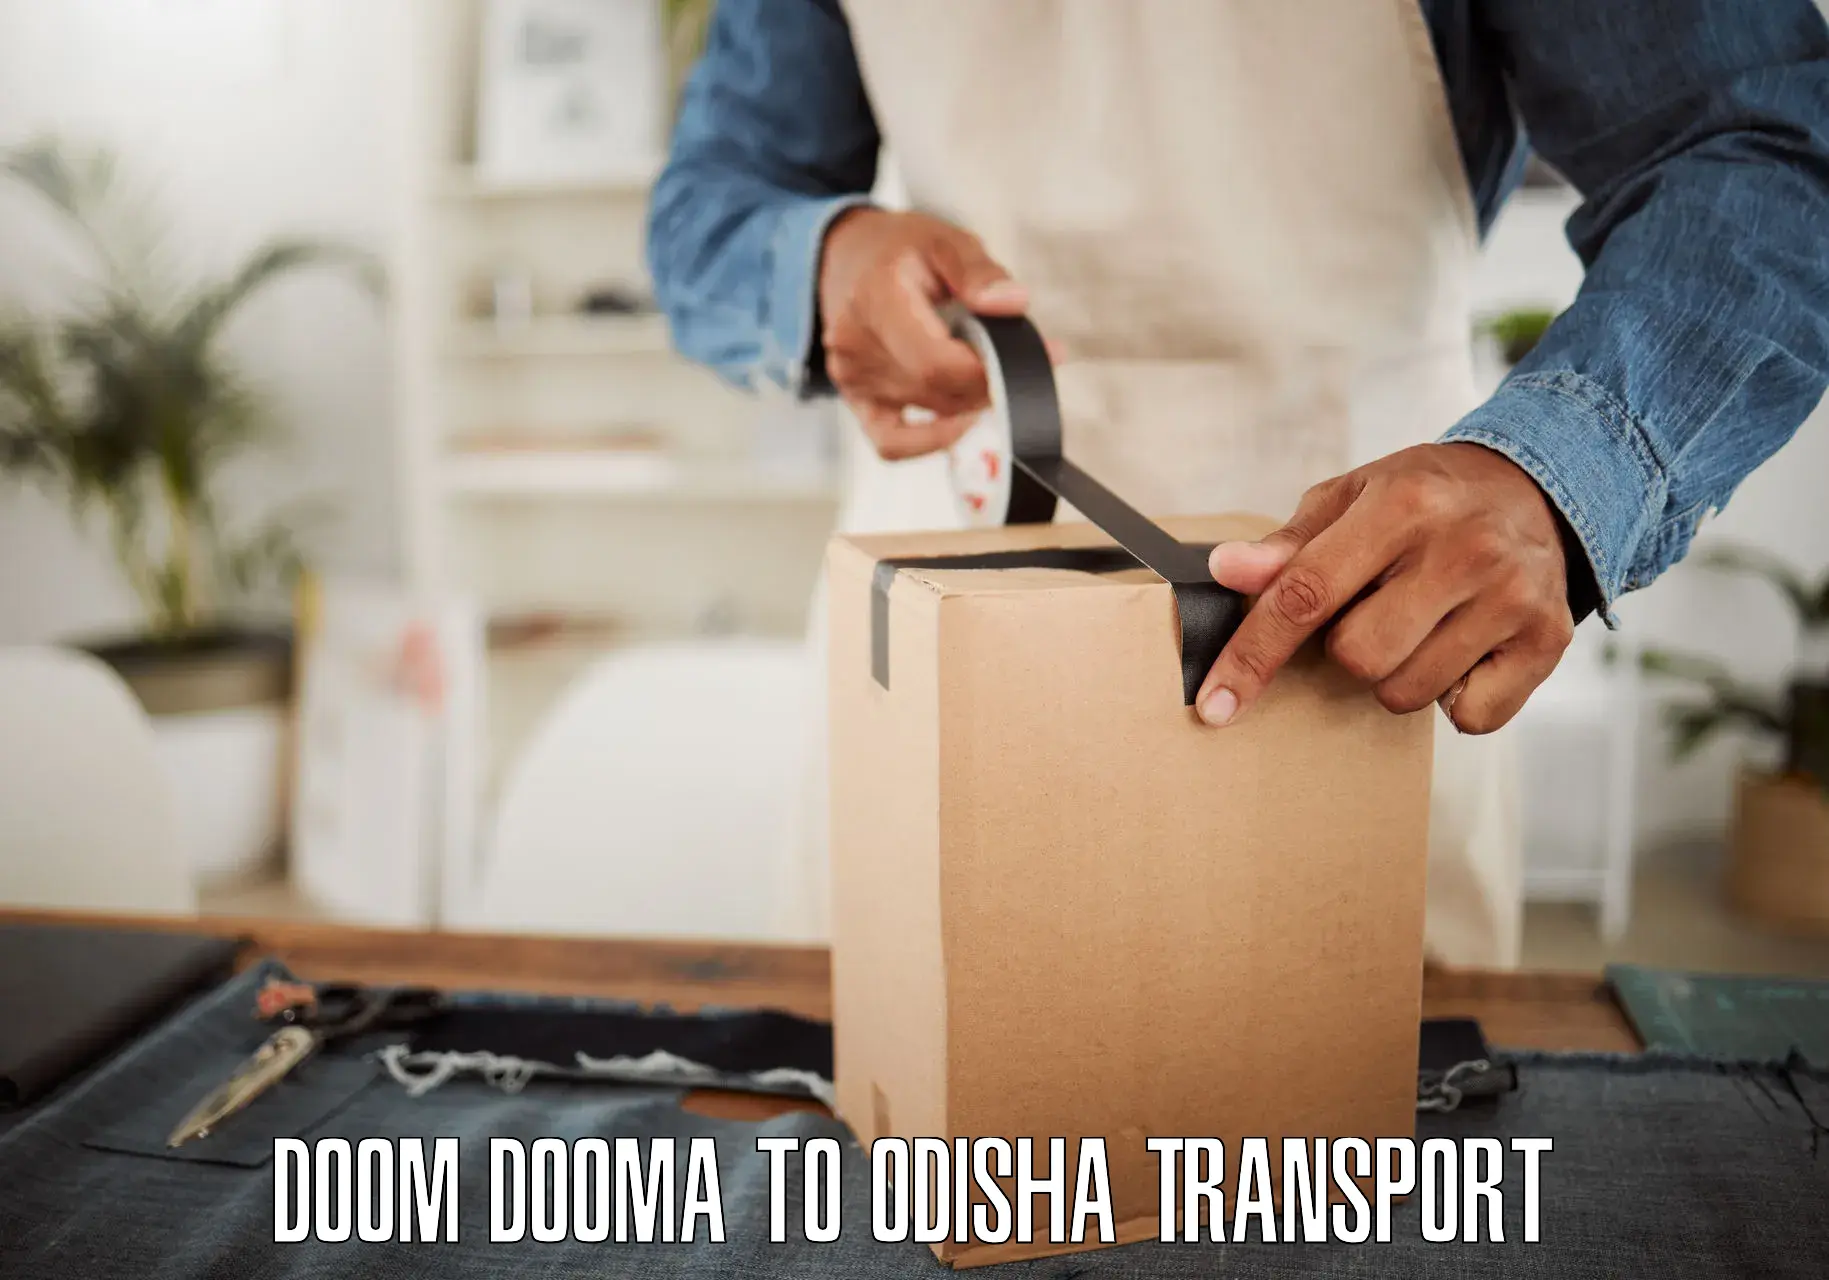 Cargo transport services Doom Dooma to Tihidi